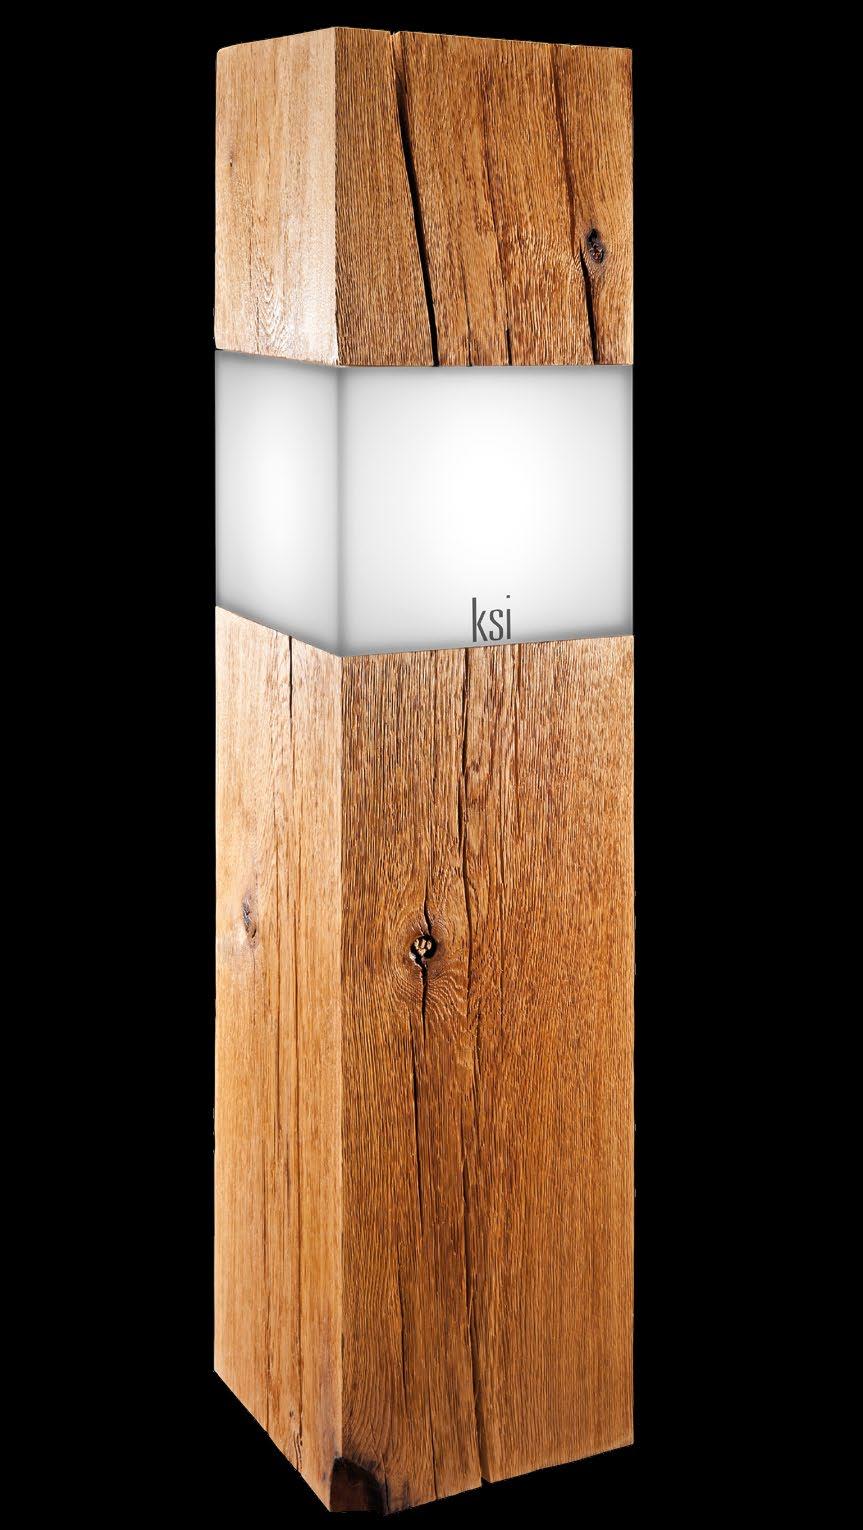 ksi old oak XXL 1 floor standing lamp LED ksi old oak XXL 2 floor standing lamp real flame One